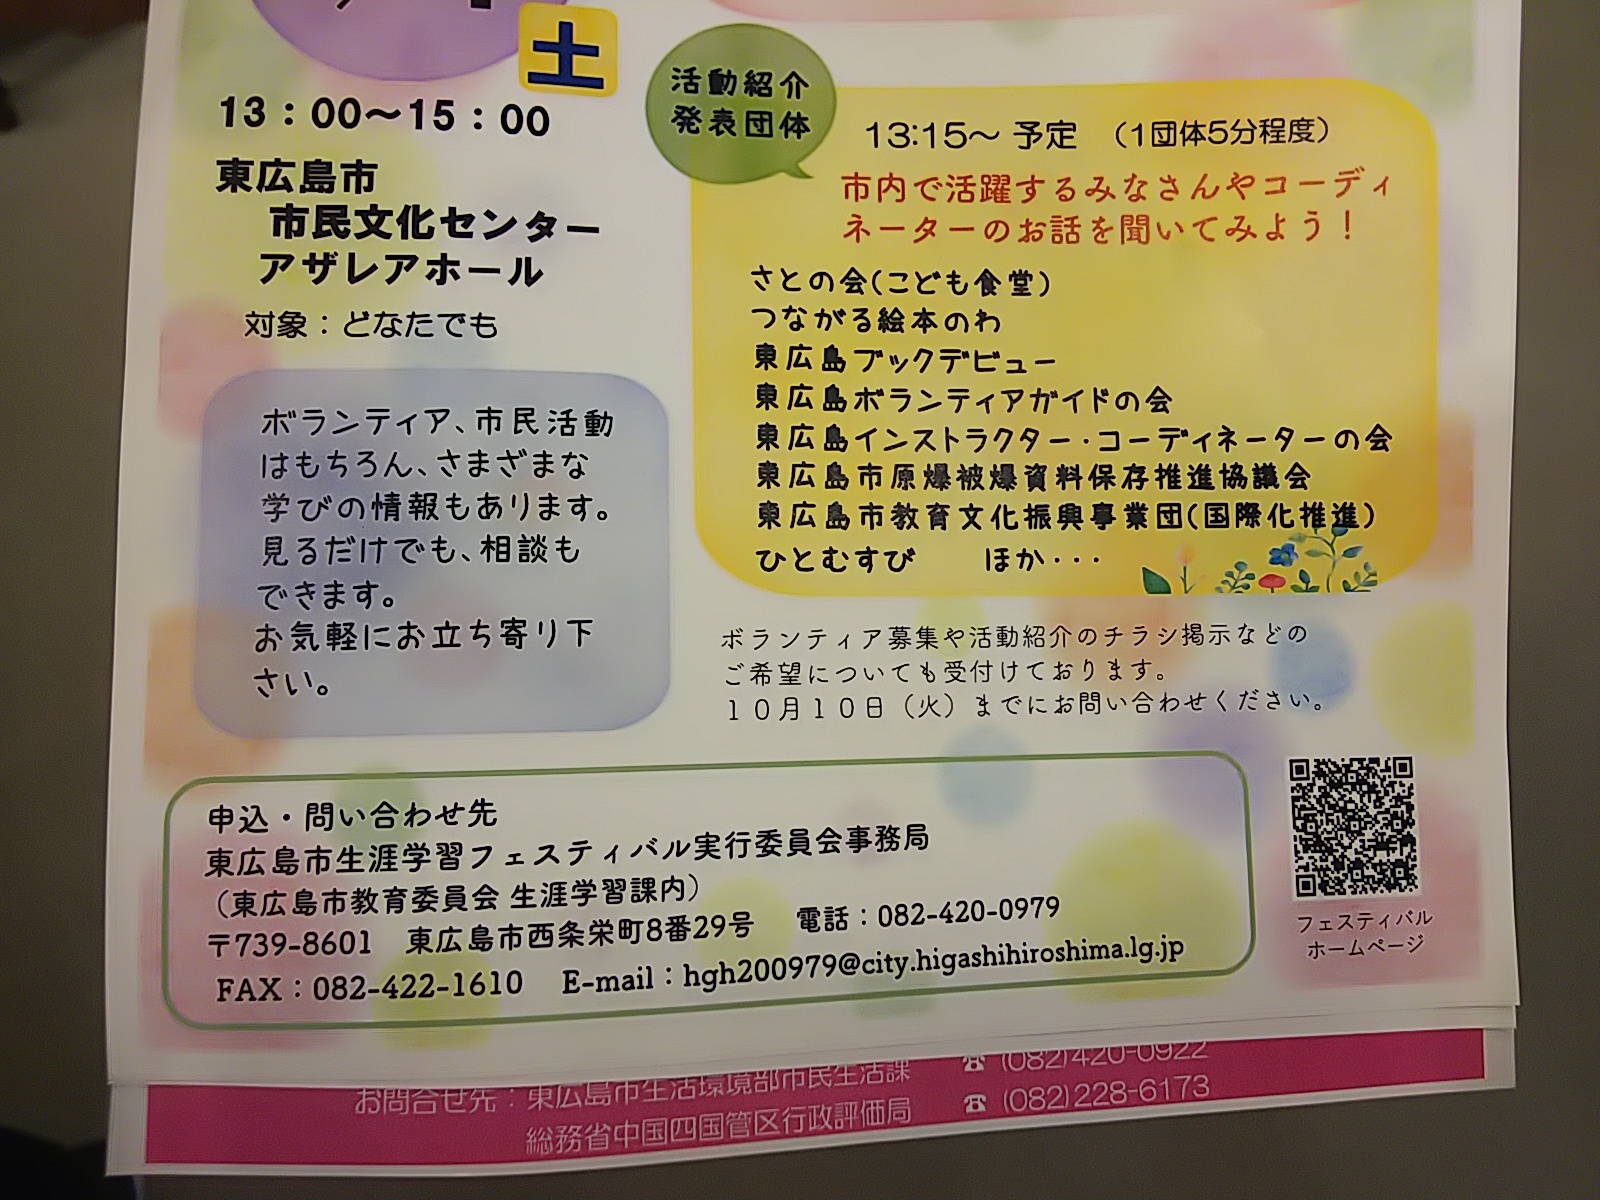 「東広島のボランティア・市民活動いろとりどり」